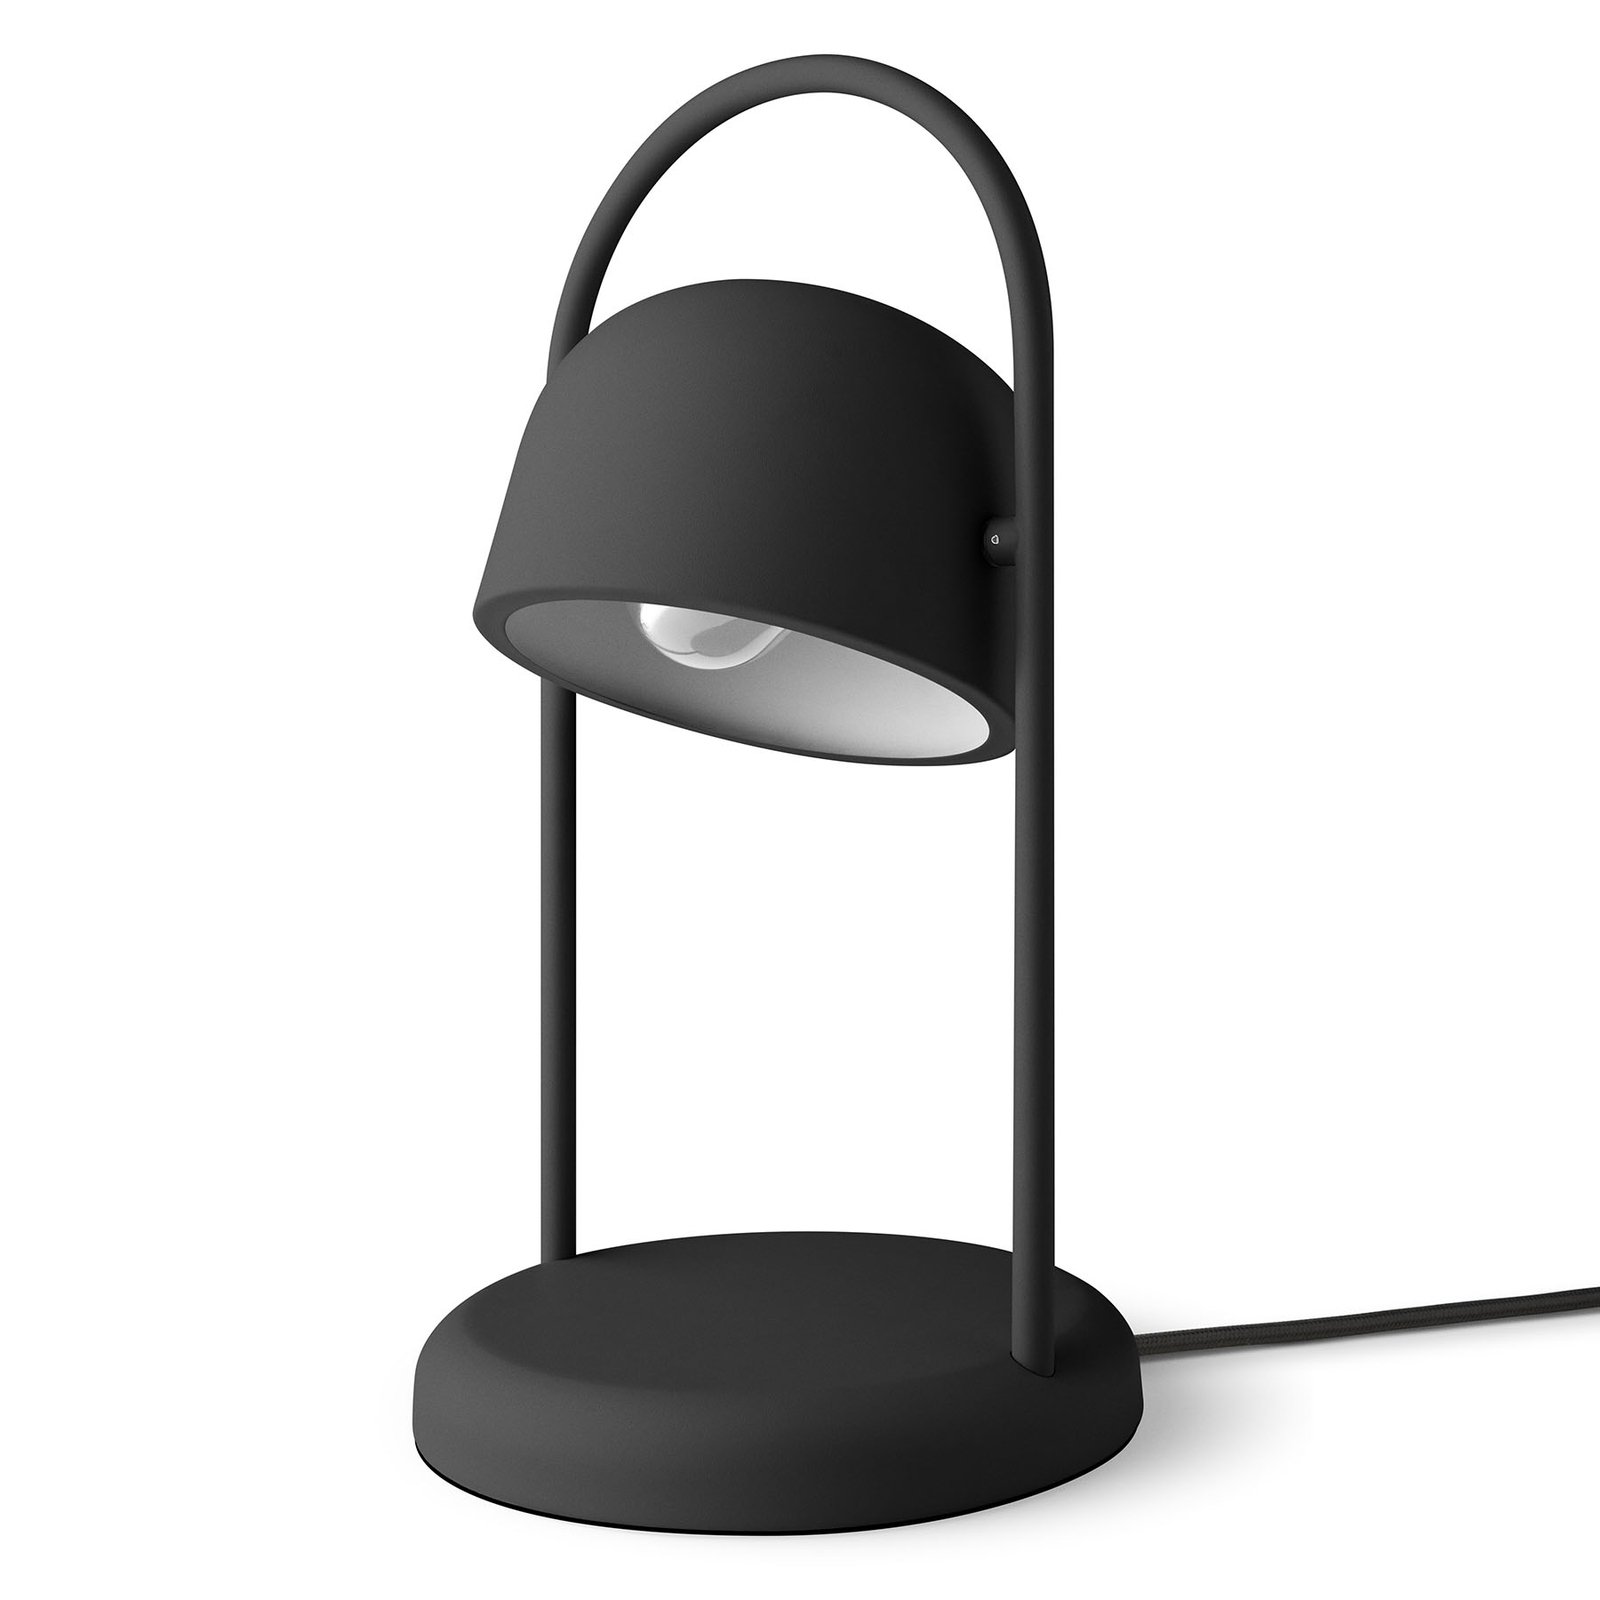 EVA Solo Quay table lamp, black